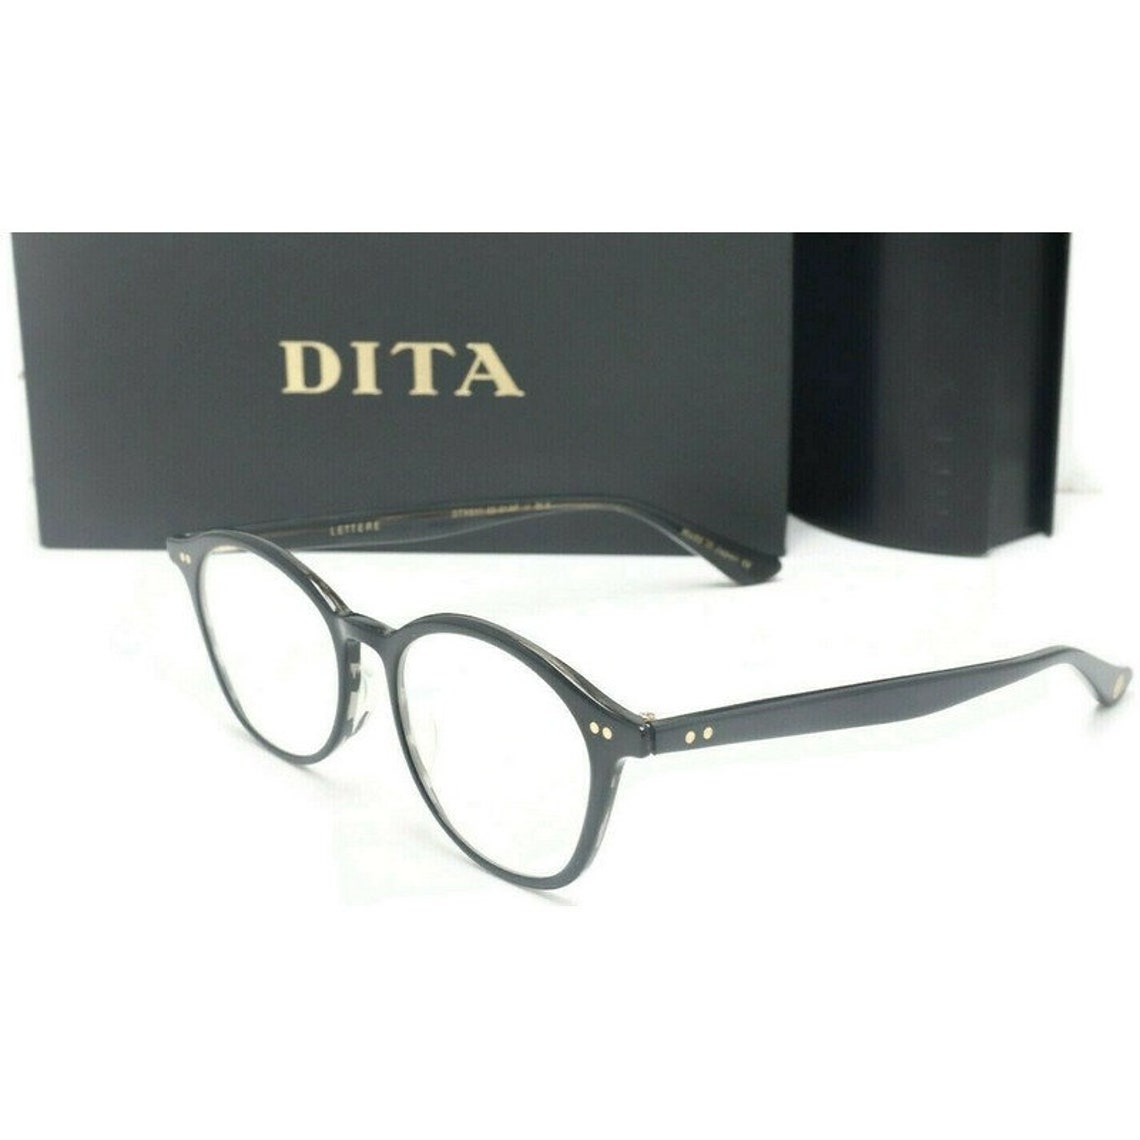 Dita Lettere DTX-511-A Oval Black Eyeglasses Demo Lenses 49mm | Etsy